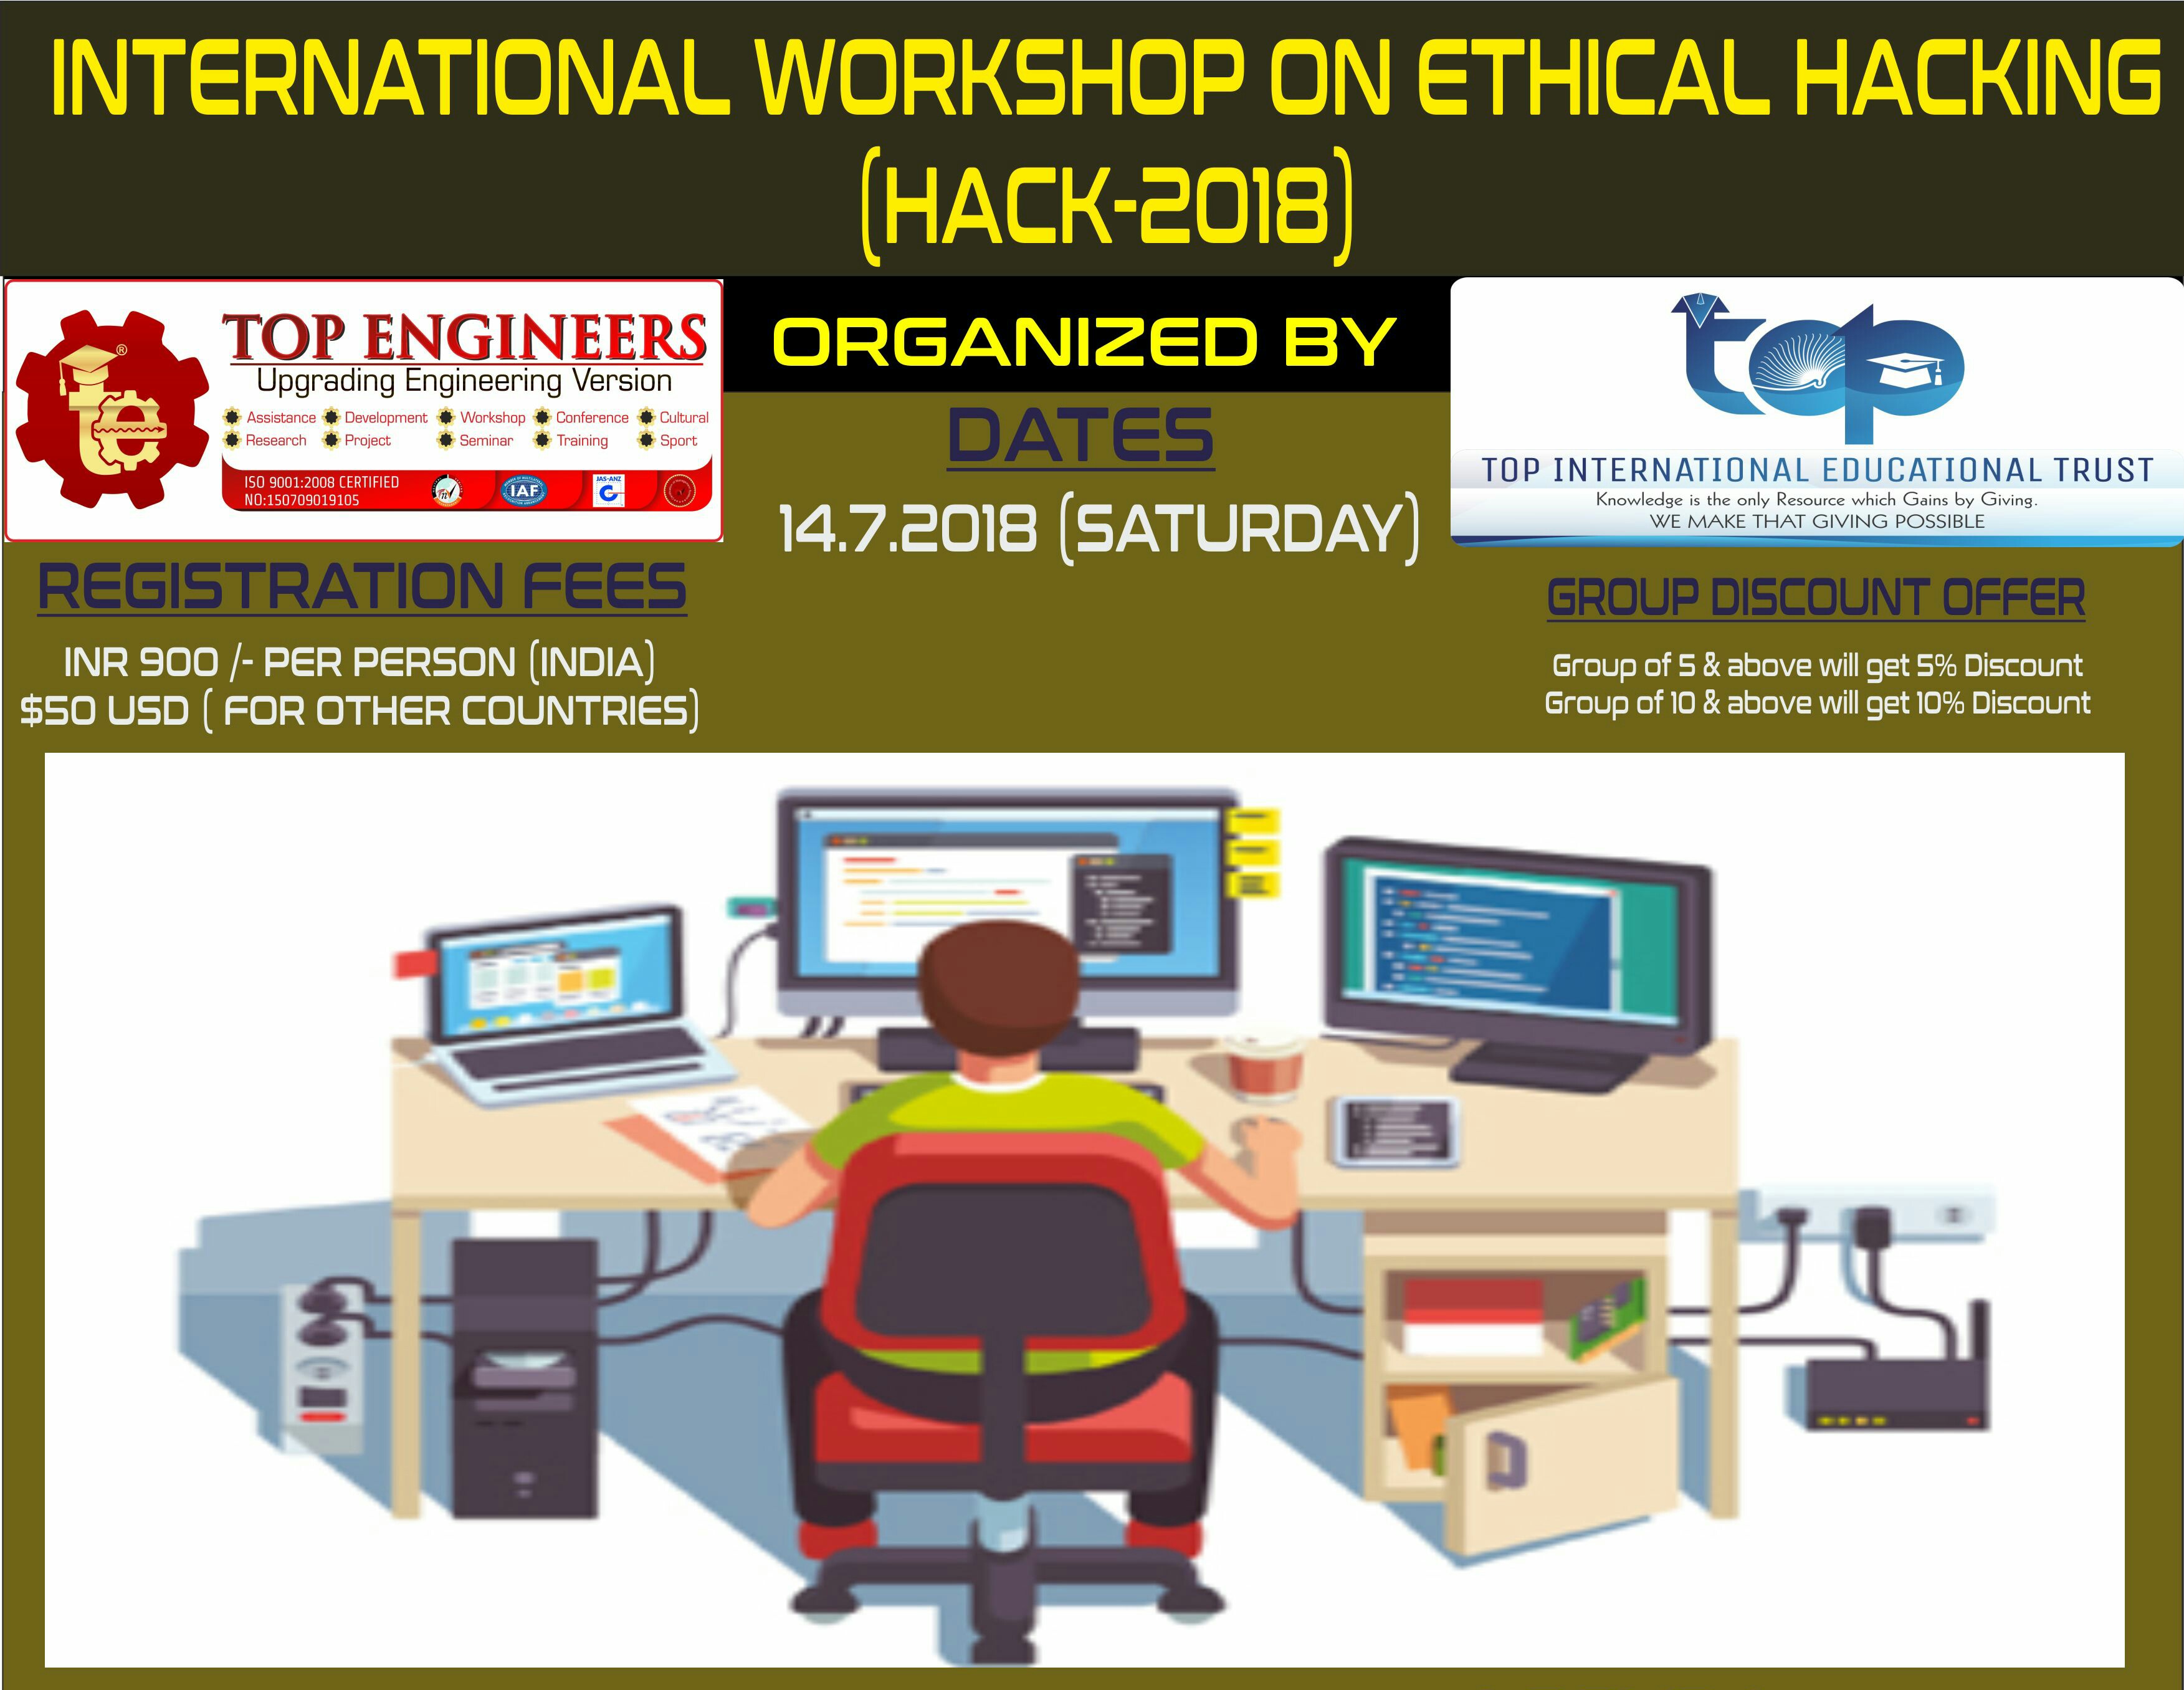 INTERNATIONAL WORKSHOP ON ETHICAL HACKING (HACK-2018), Chennai, Tamil Nadu, India